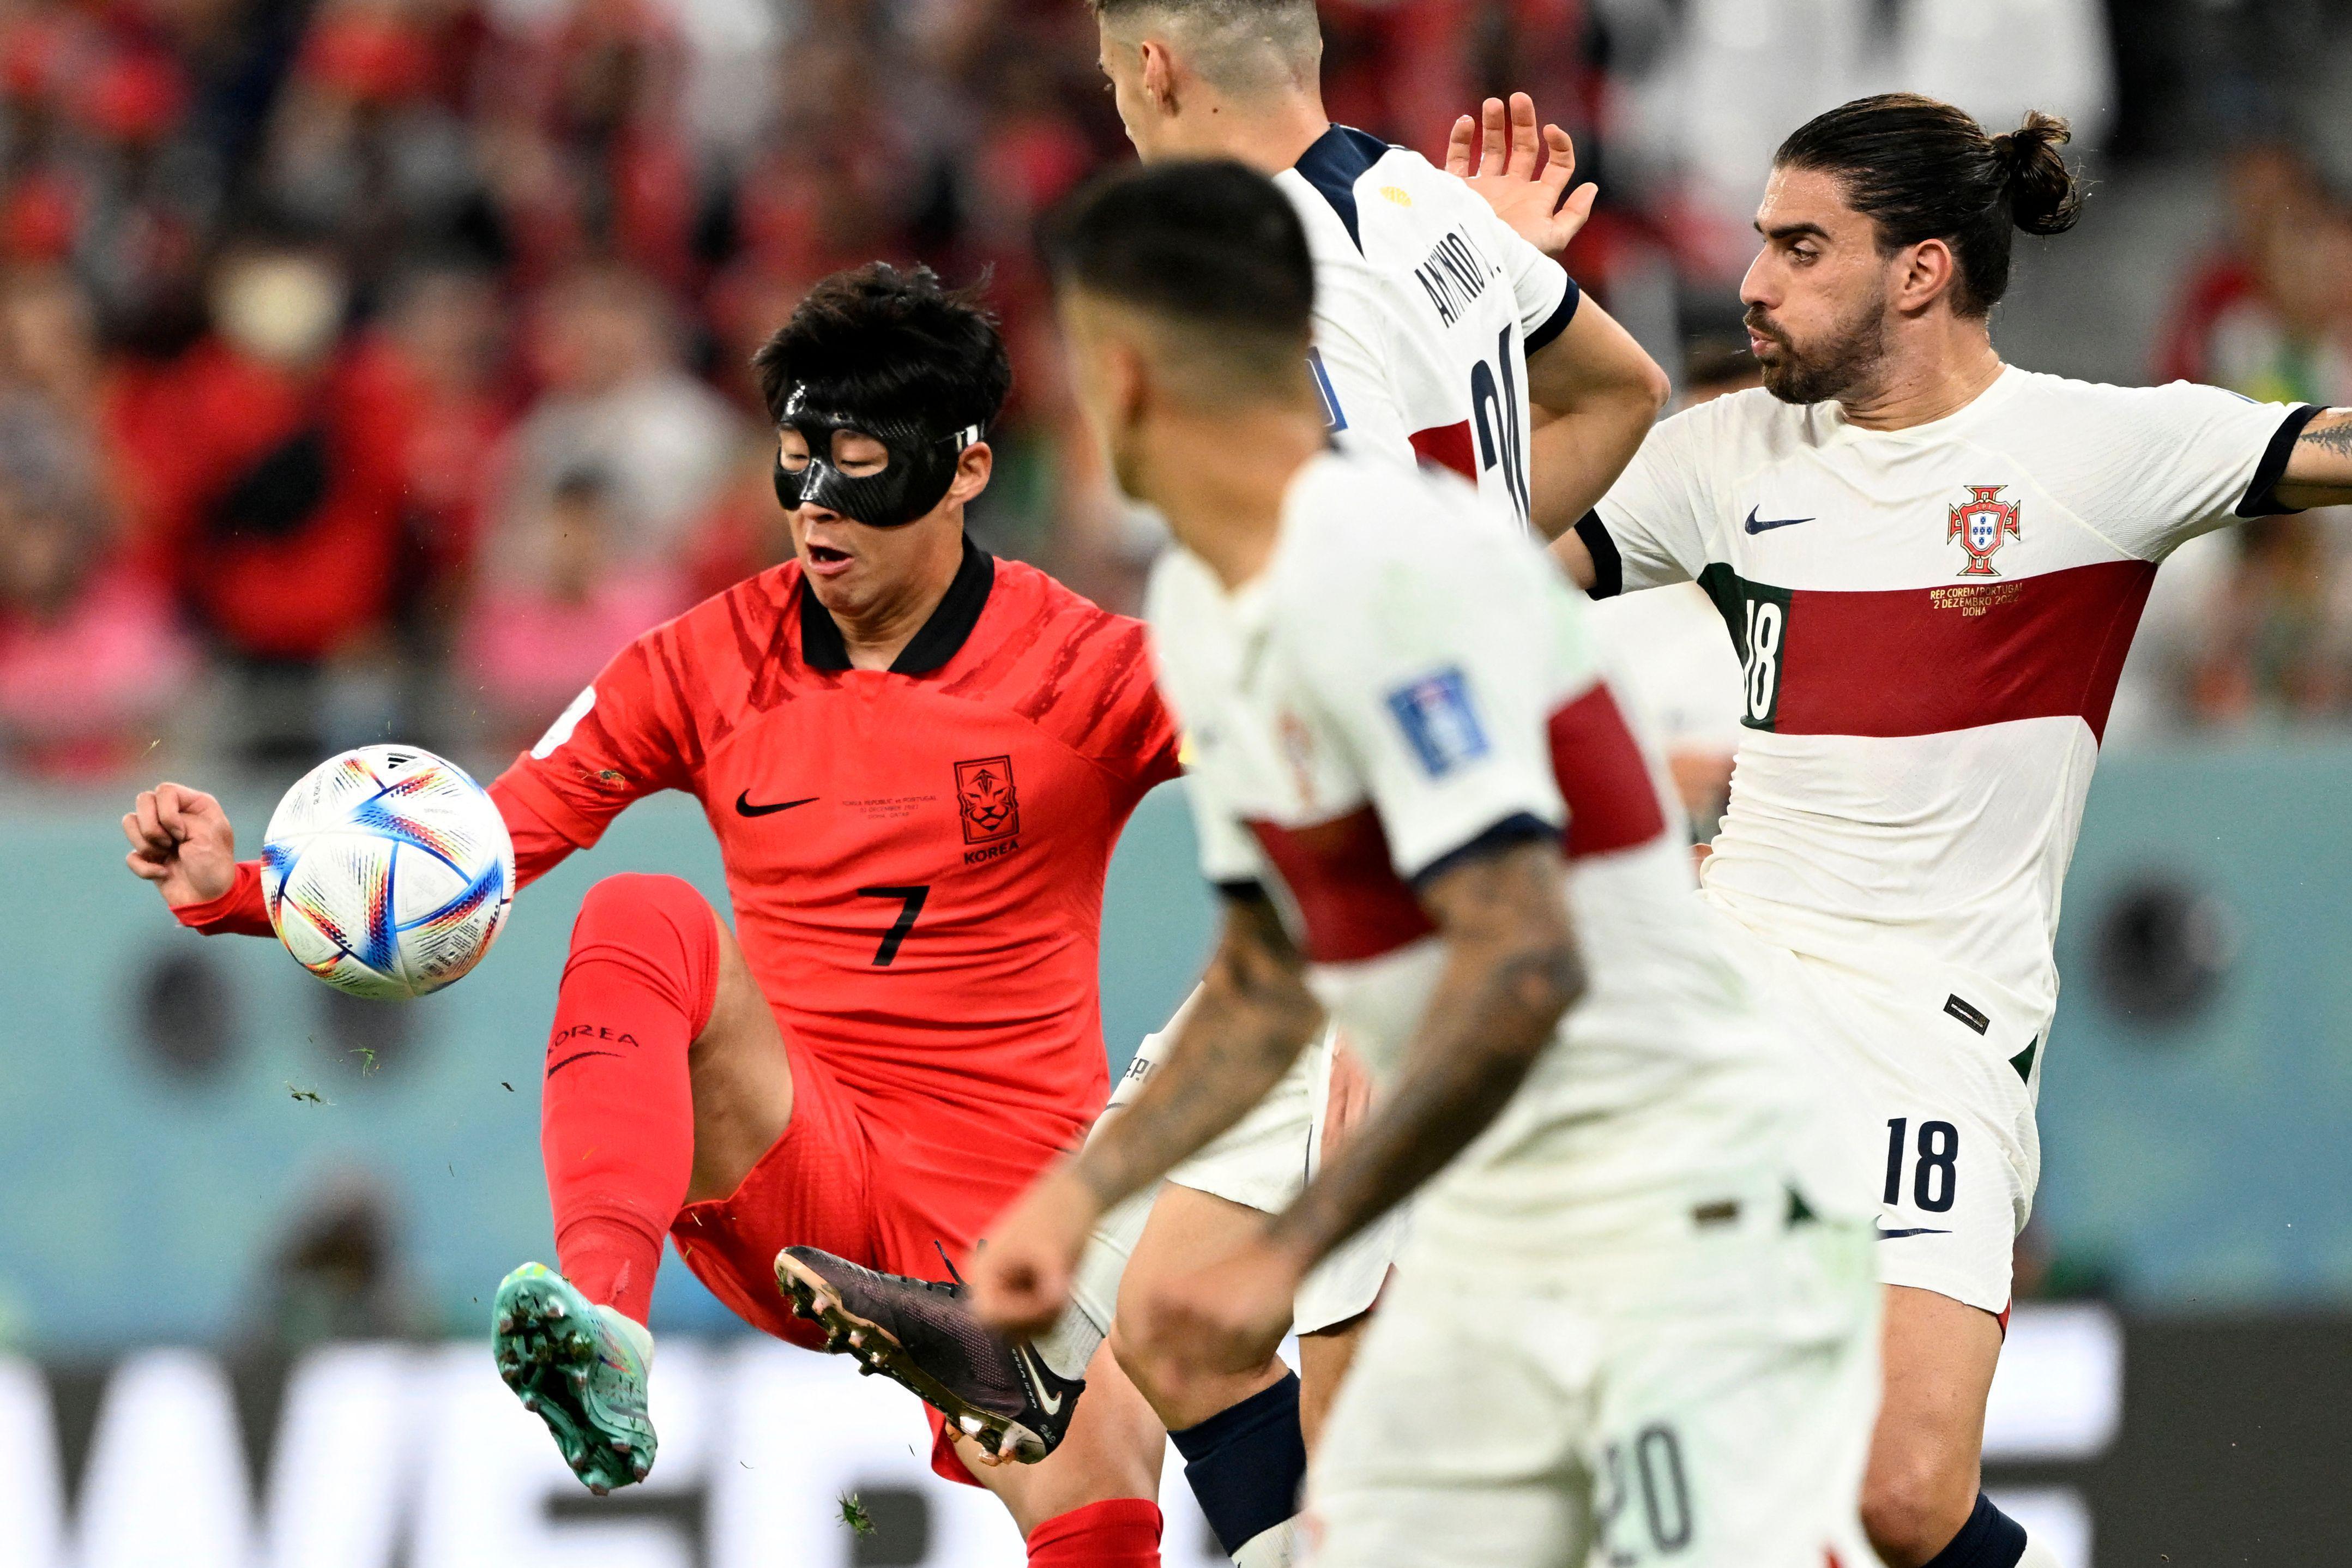 Güney Kore uzatmada attı, son 16 biletini kaptı Güney Kore - Portekiz maç sonucu: 2-1 (Dünya Kupası Maç Özeti)